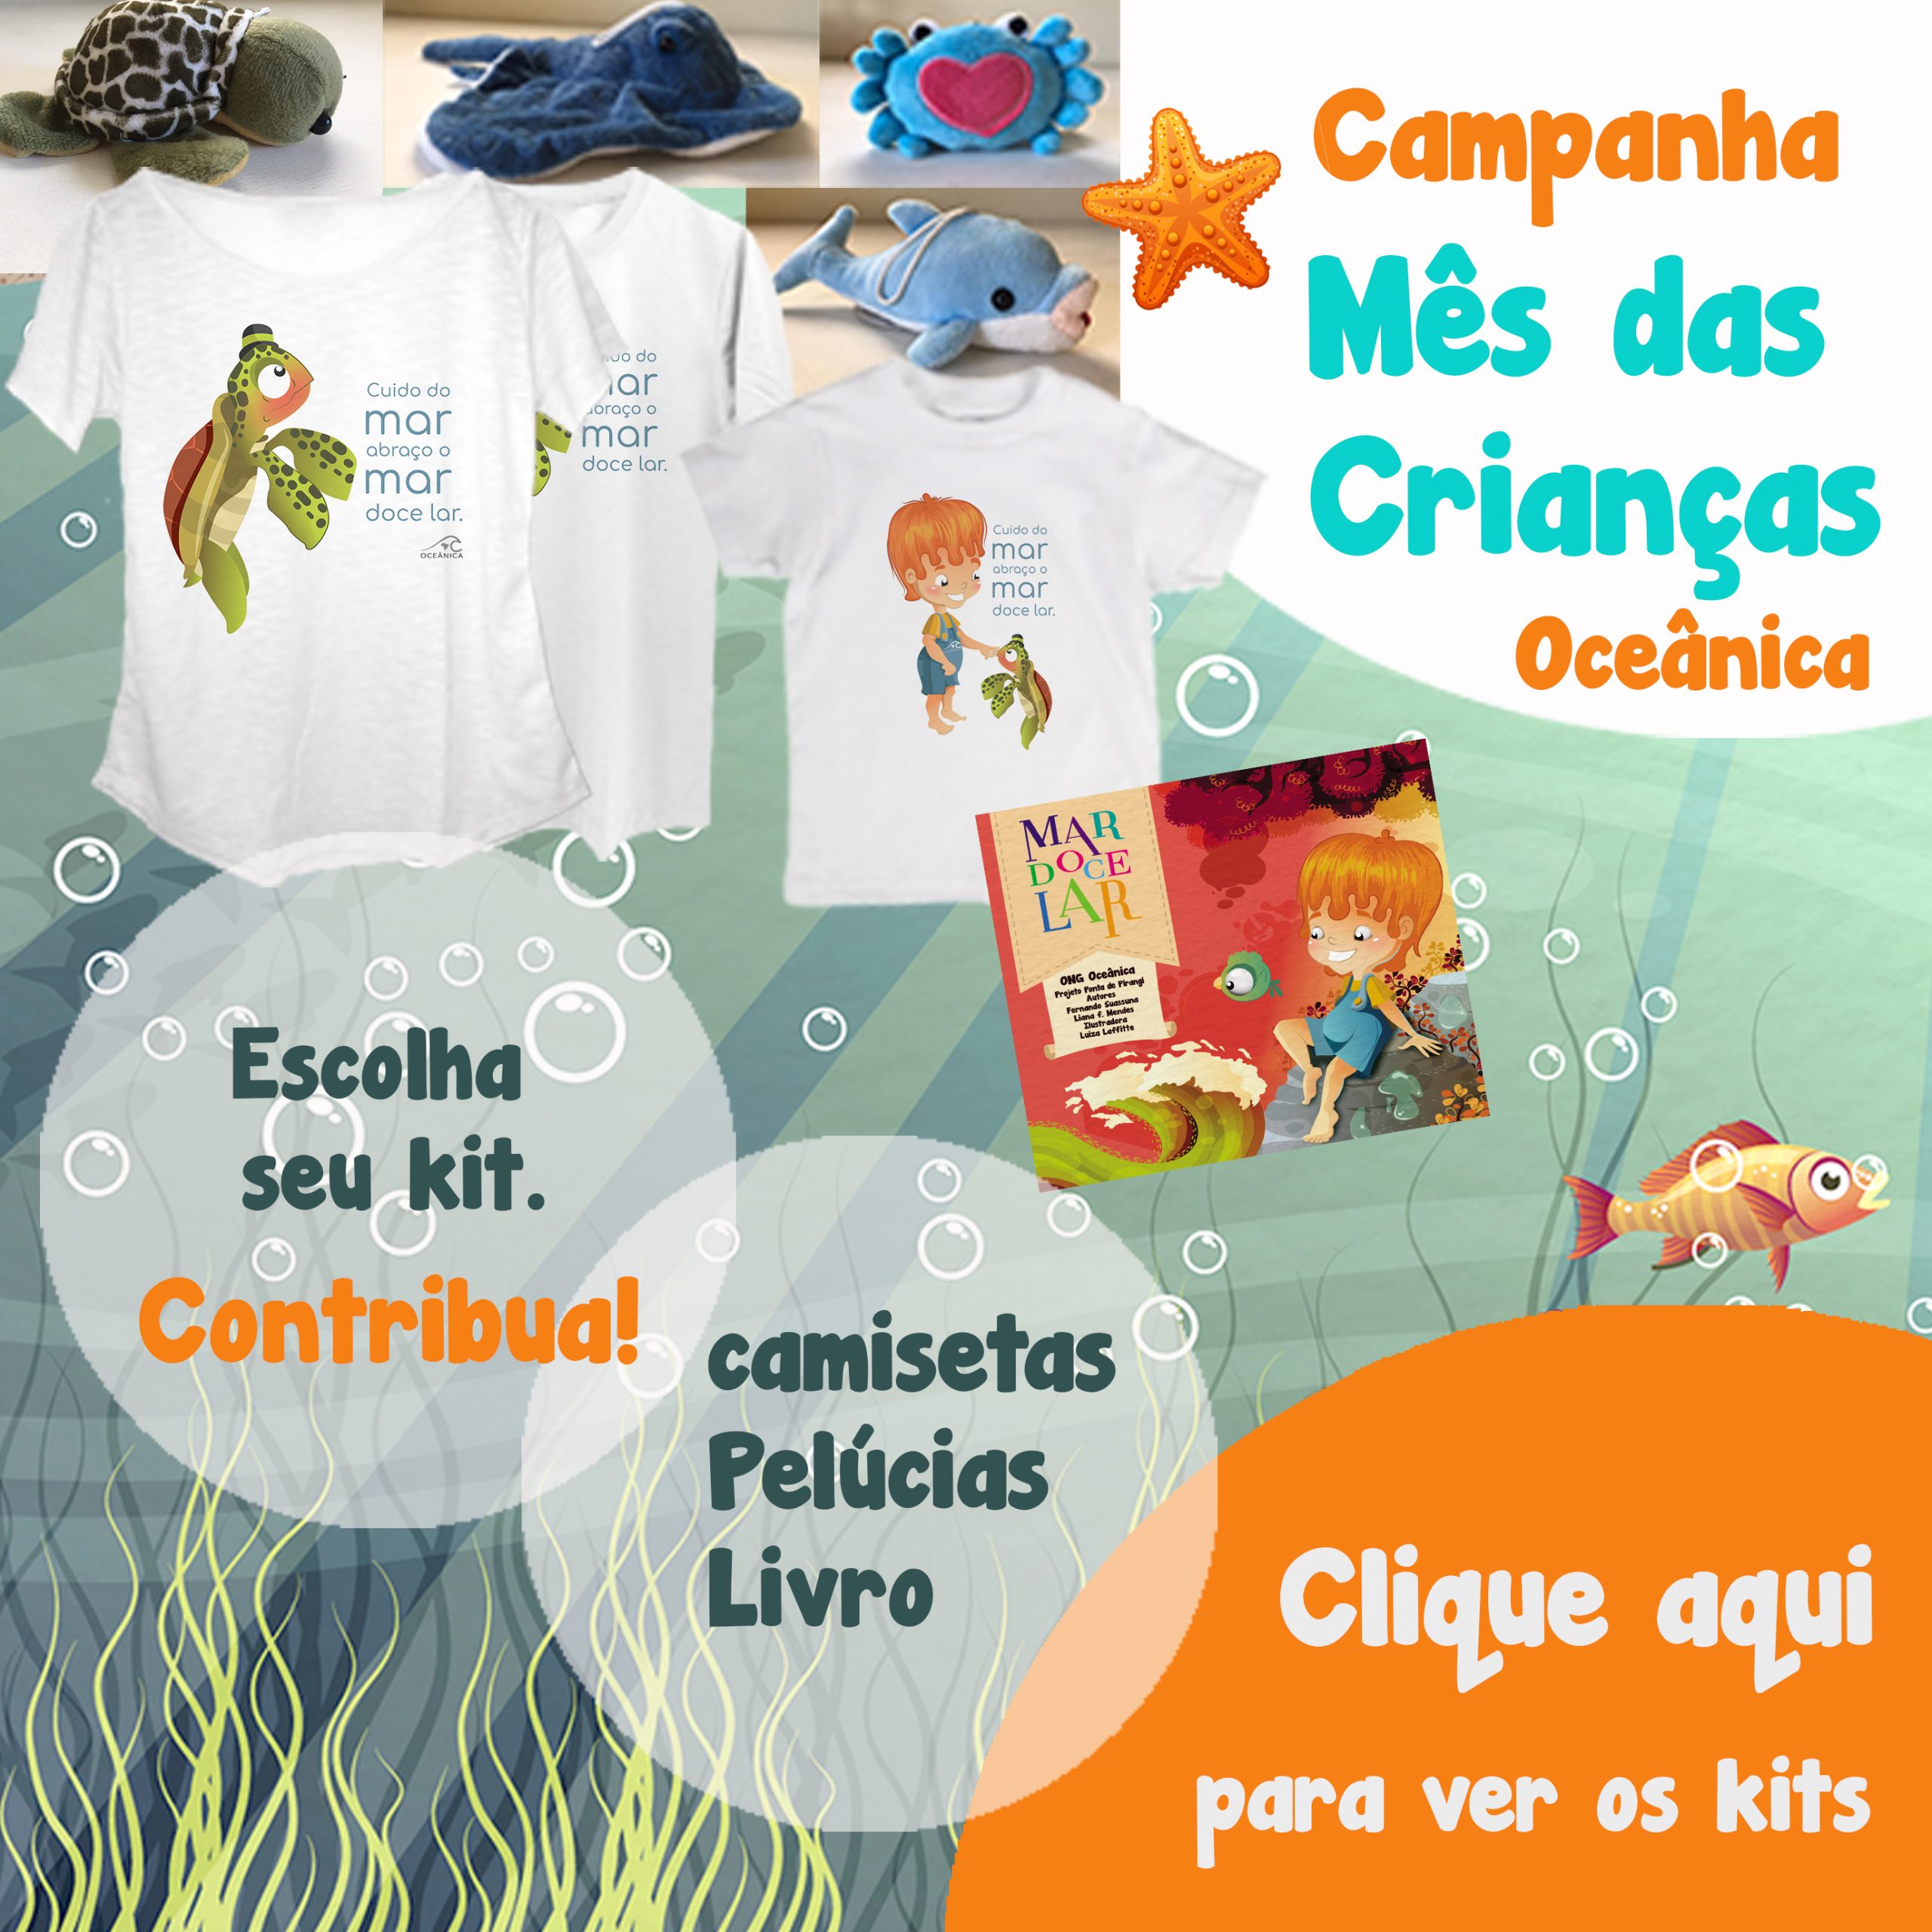 Oceânica campanha mês das crianças